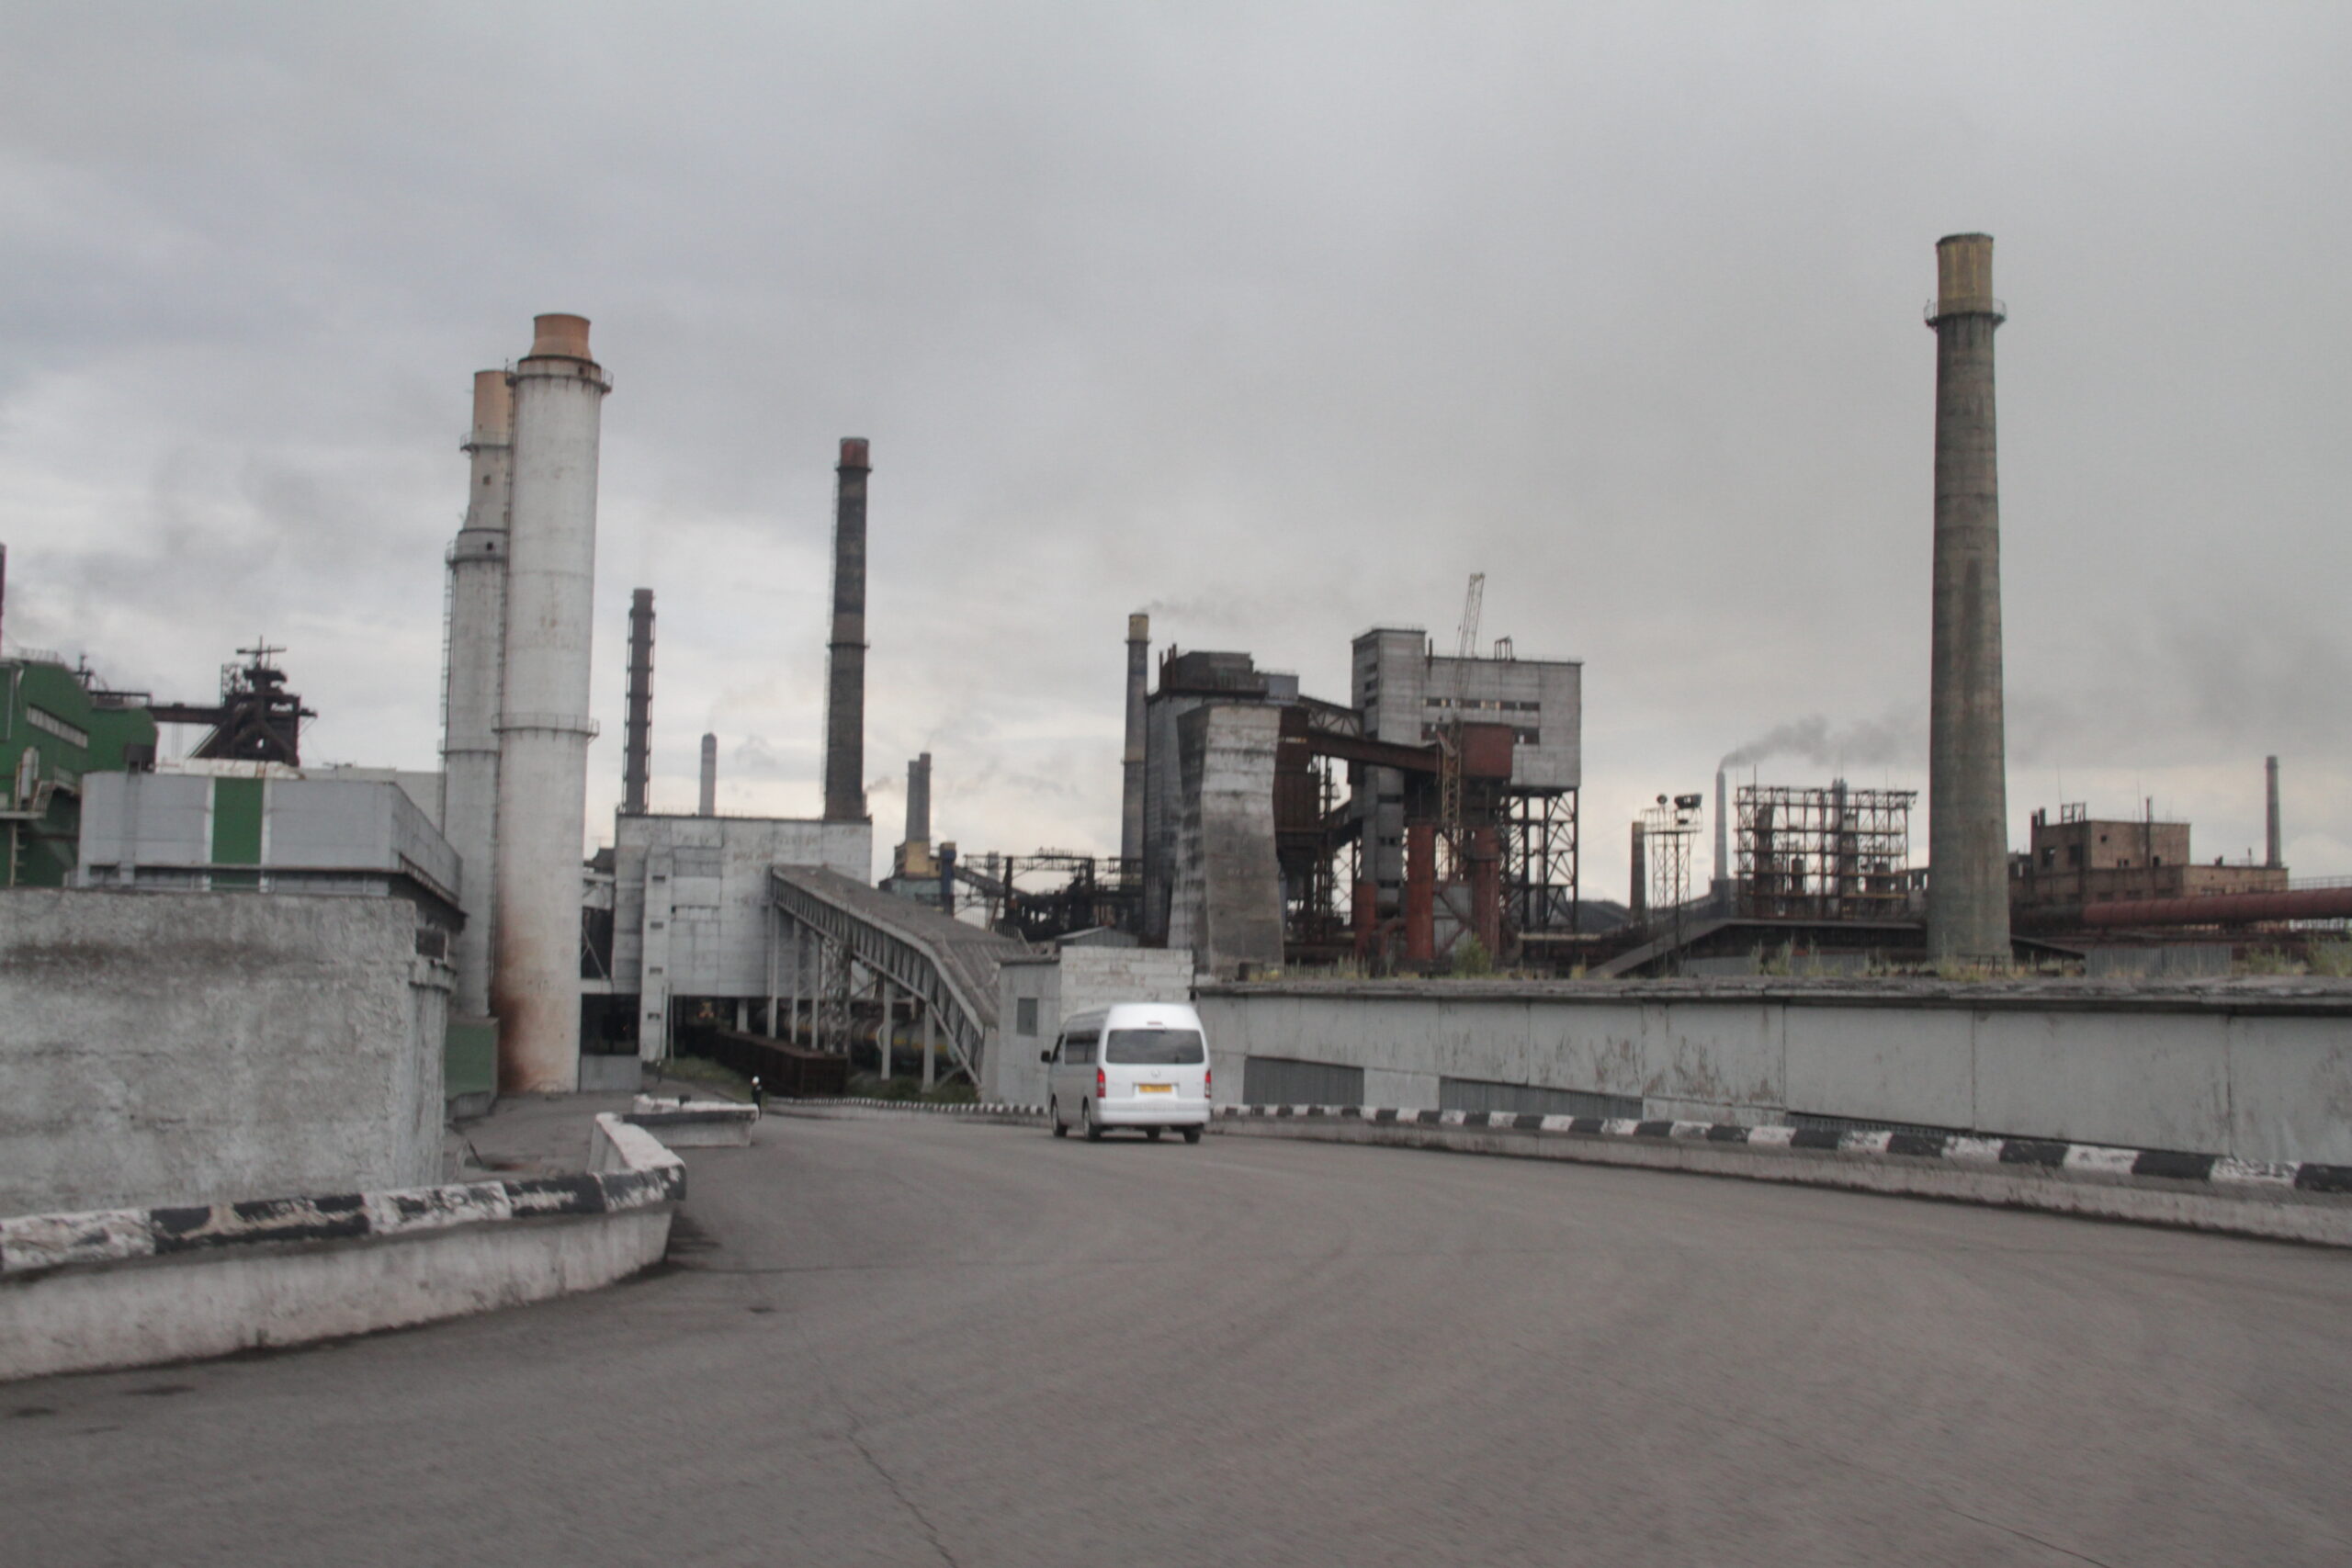 Сегодня, 8 декабря на коксохимическом производстве металлургического комбината АО "АрселорМиттал Темиртау" погиб газовщик 1982 года рождения.